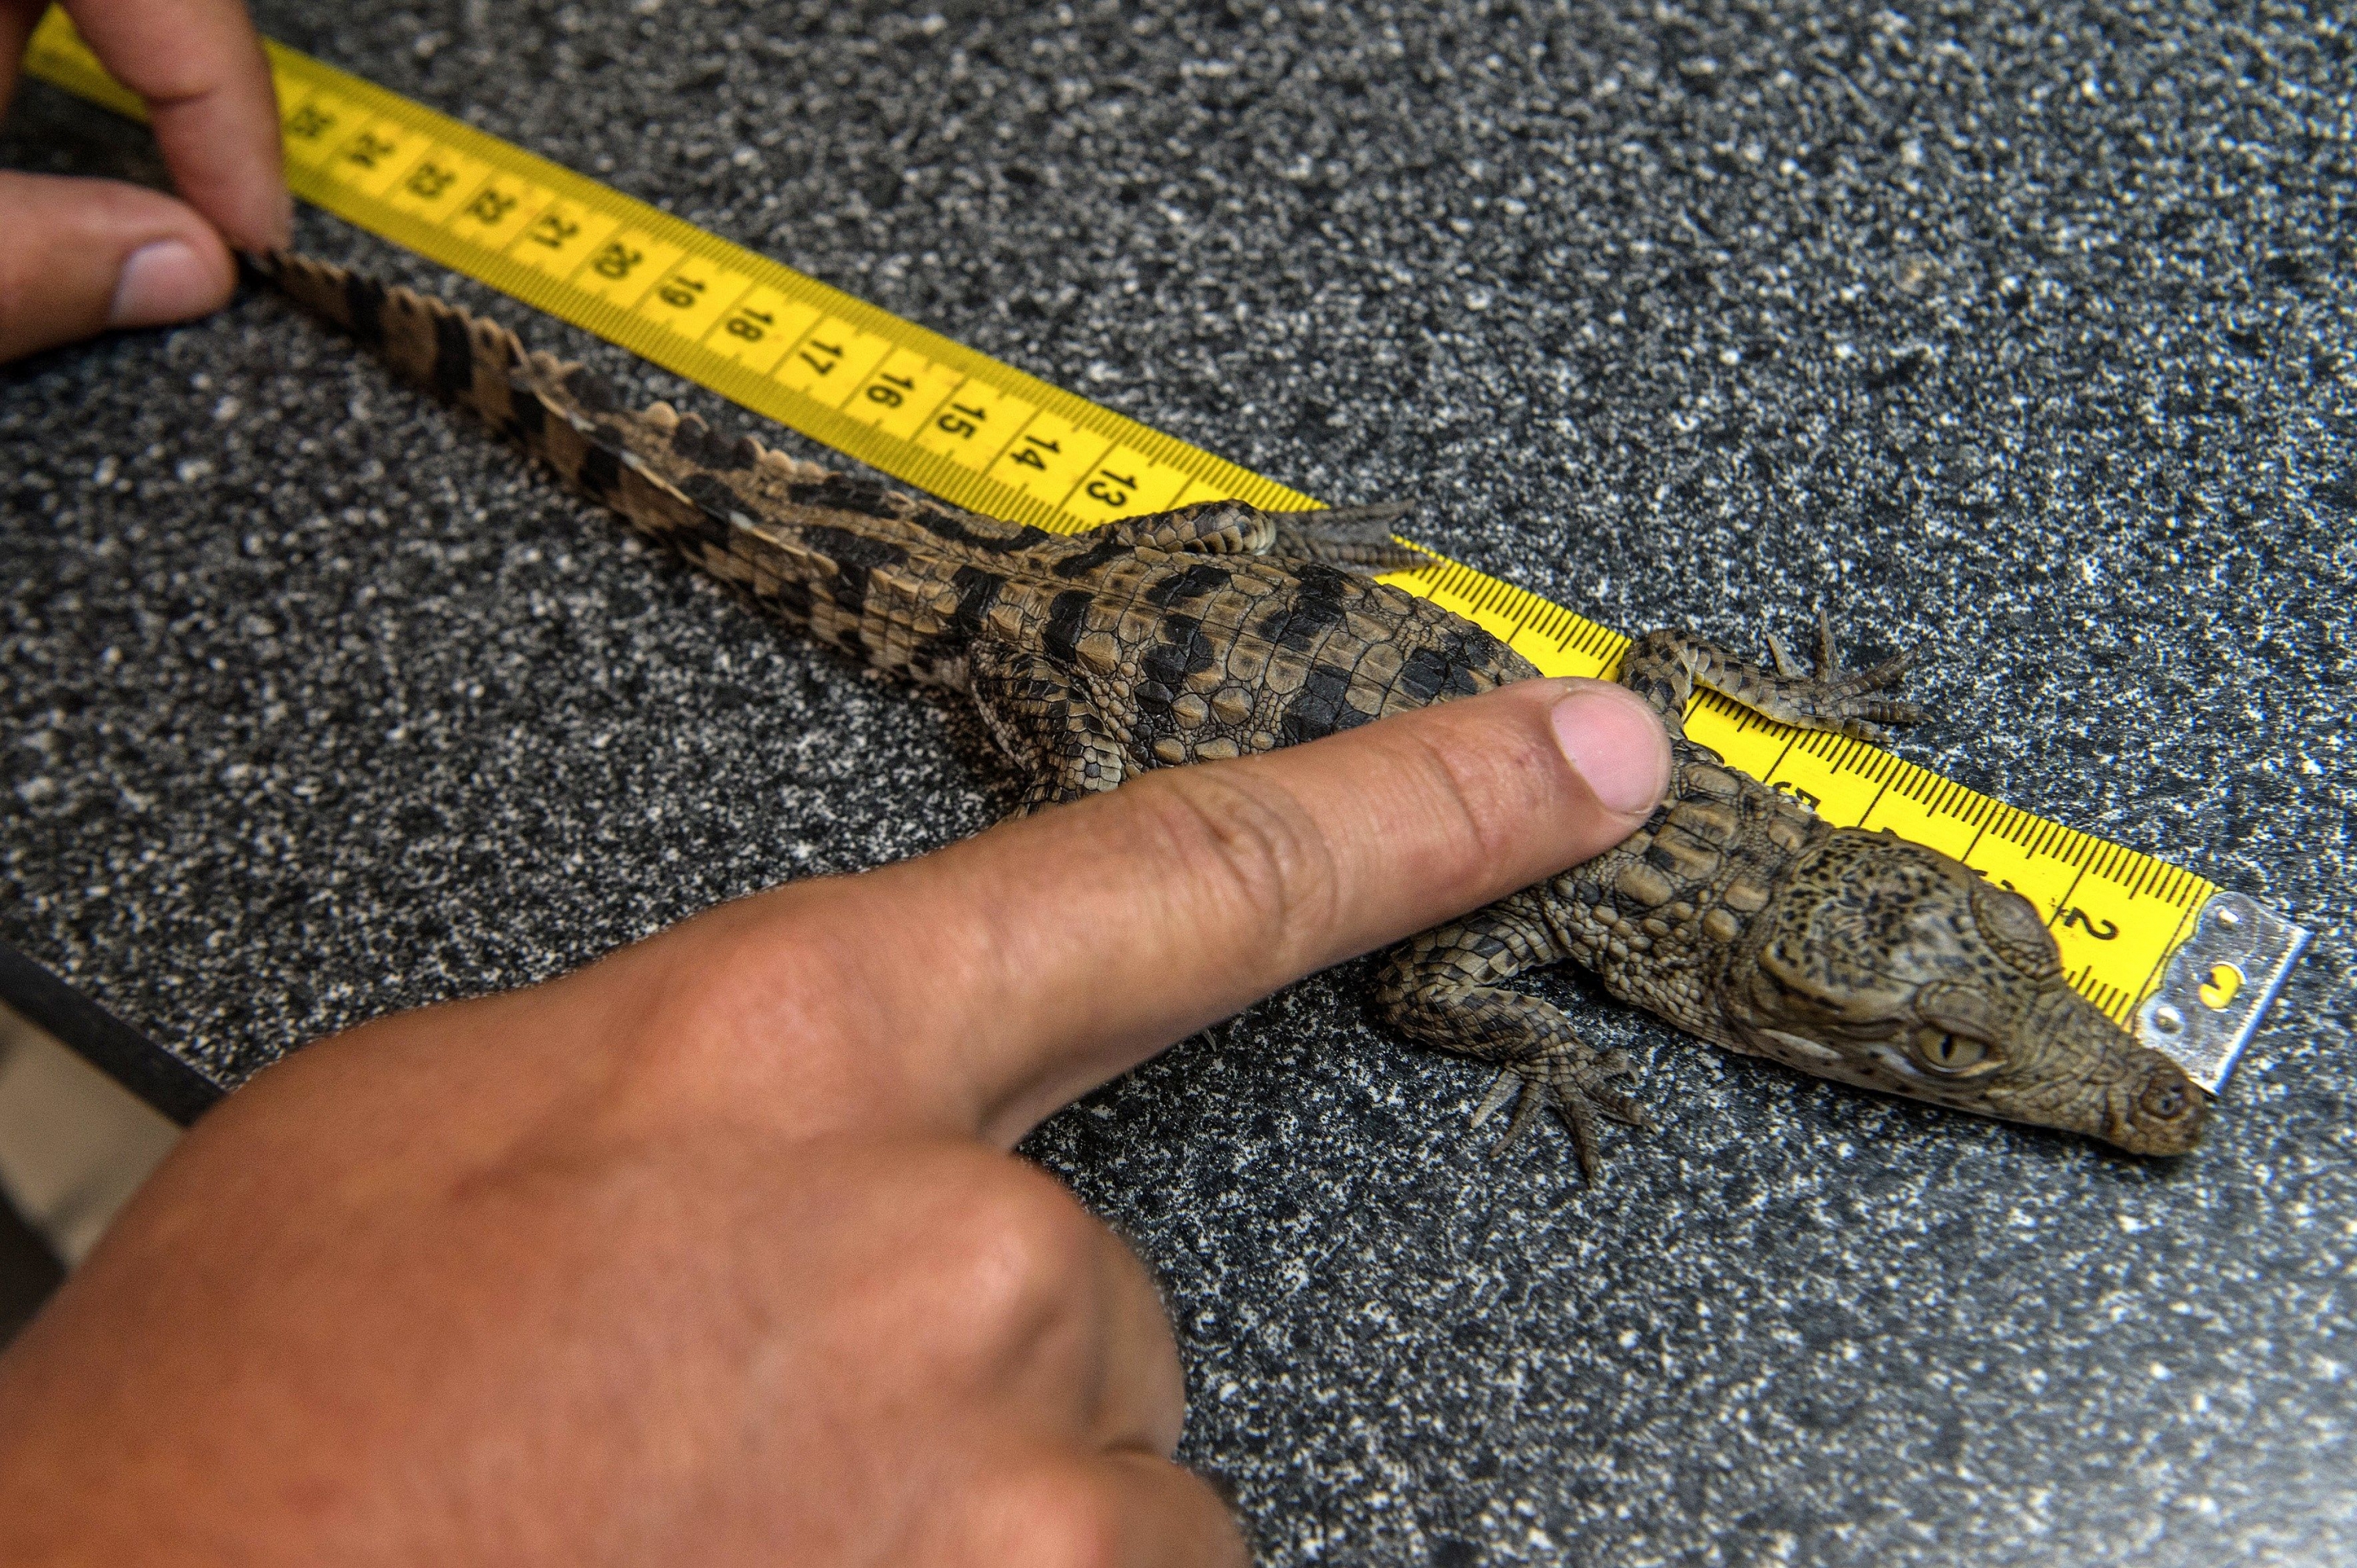 Una persona mide una cría de cocodrilo americano en Miami. (EFE)